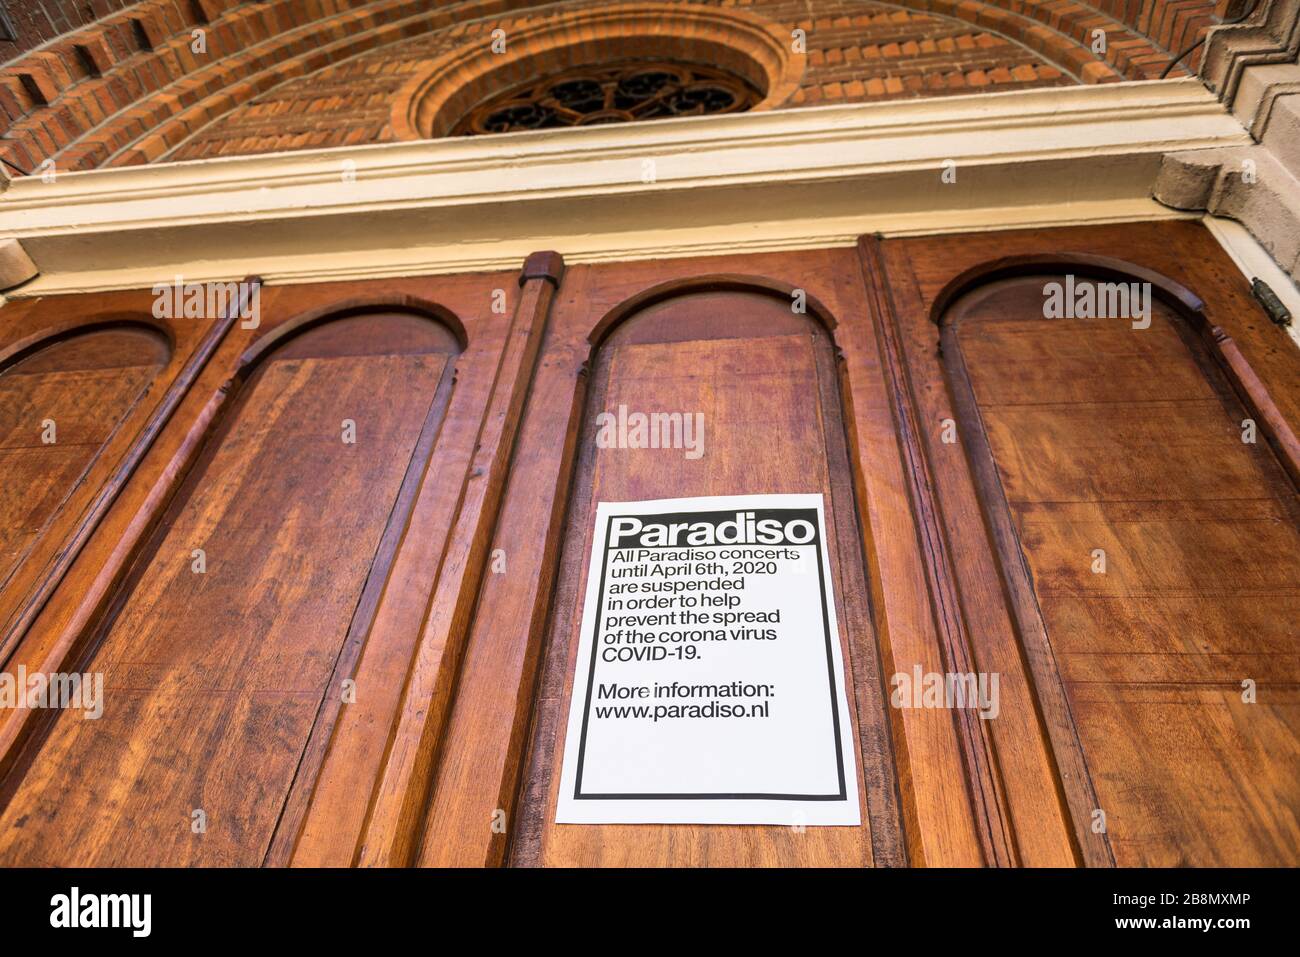 Salle de musique Paradiso fermée à Amsterdam Pays-Bas en raison de l'éclosion de coronavirus Banque D'Images